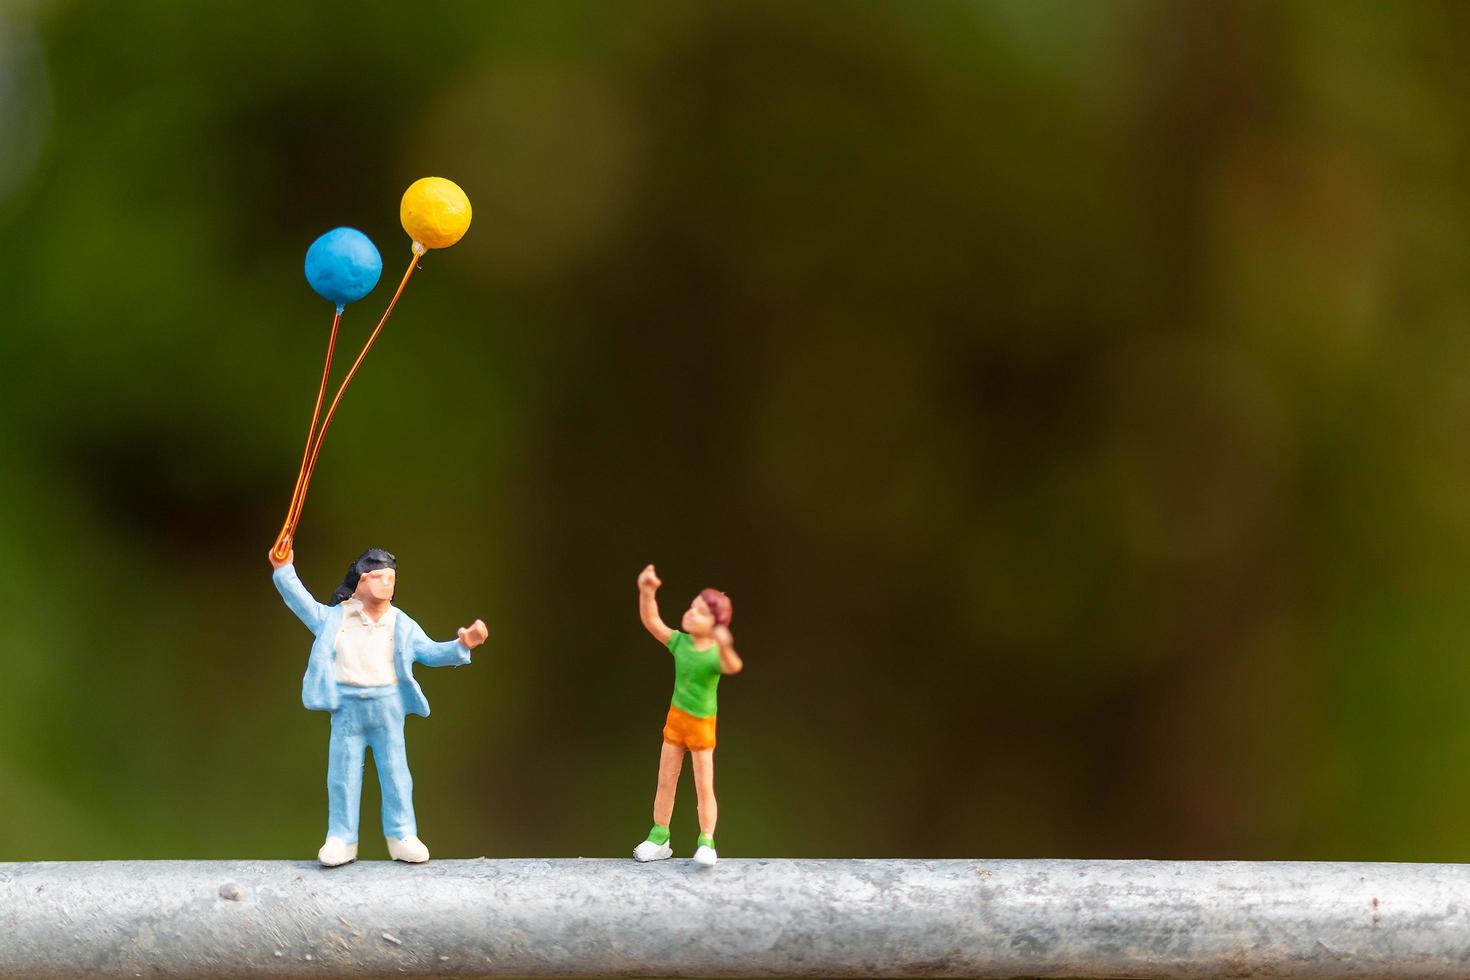 famille miniature tenant des ballons colorés, concept de famille heureuse photo